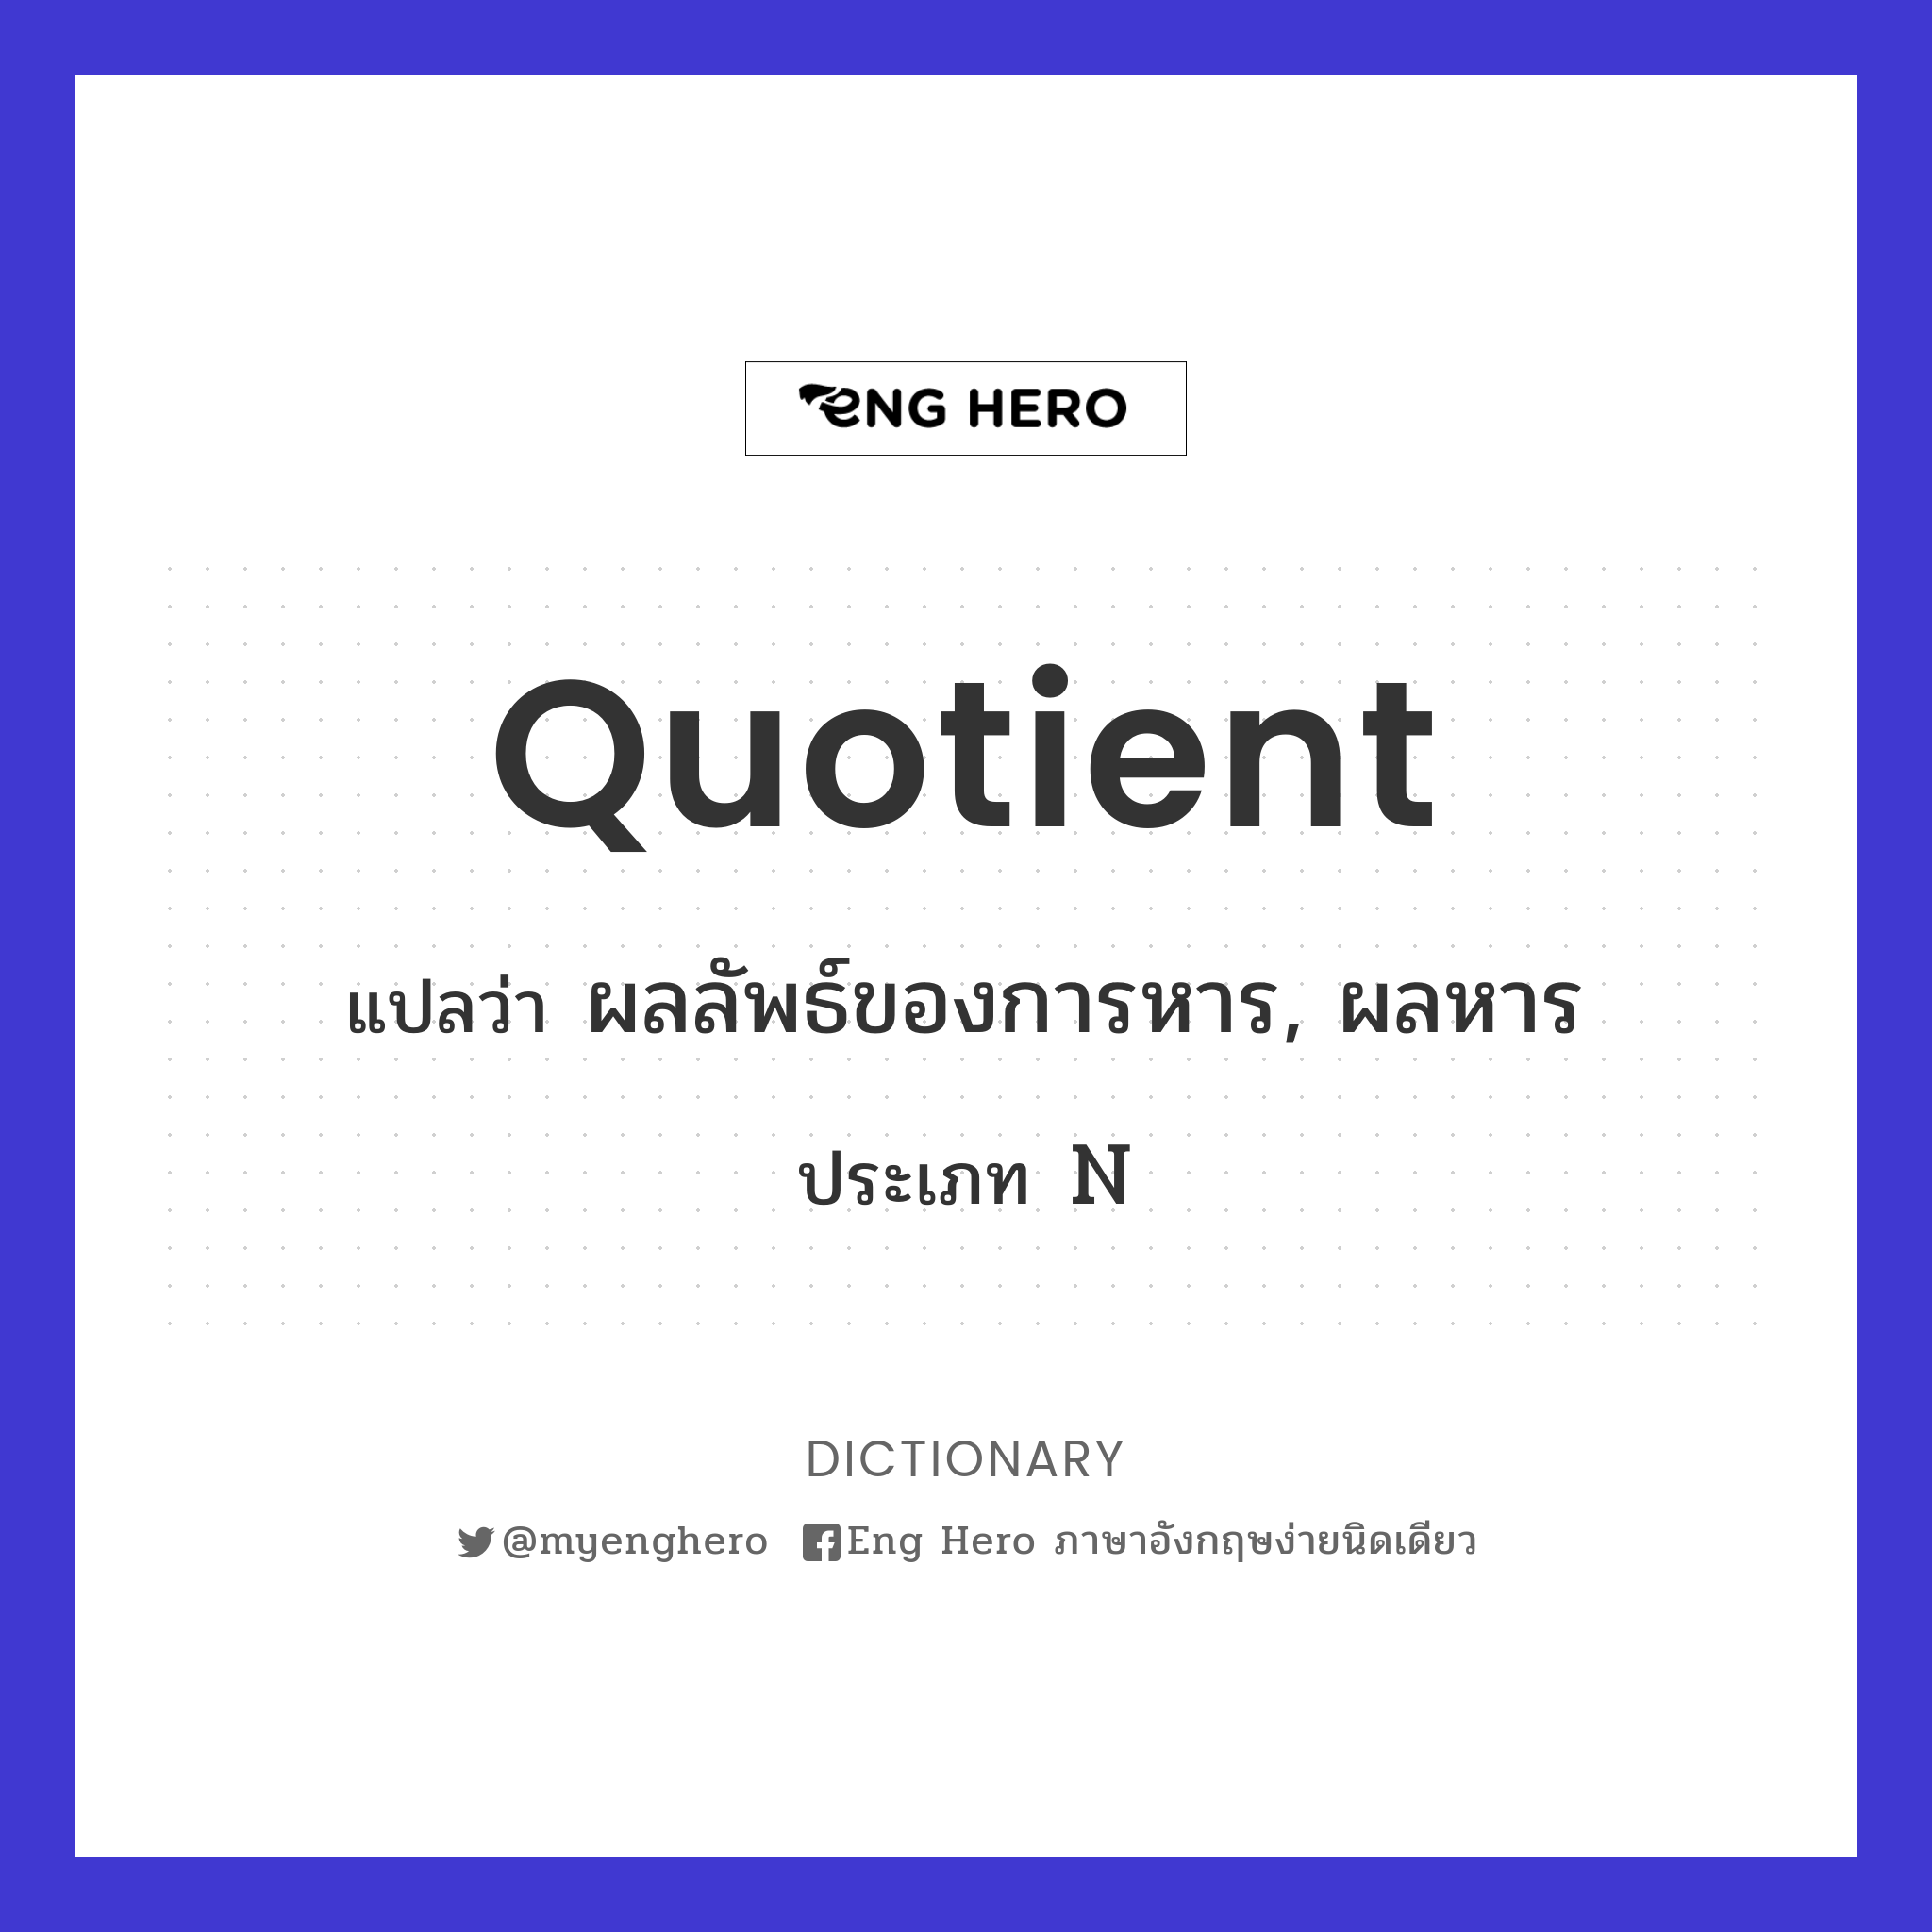 quotient